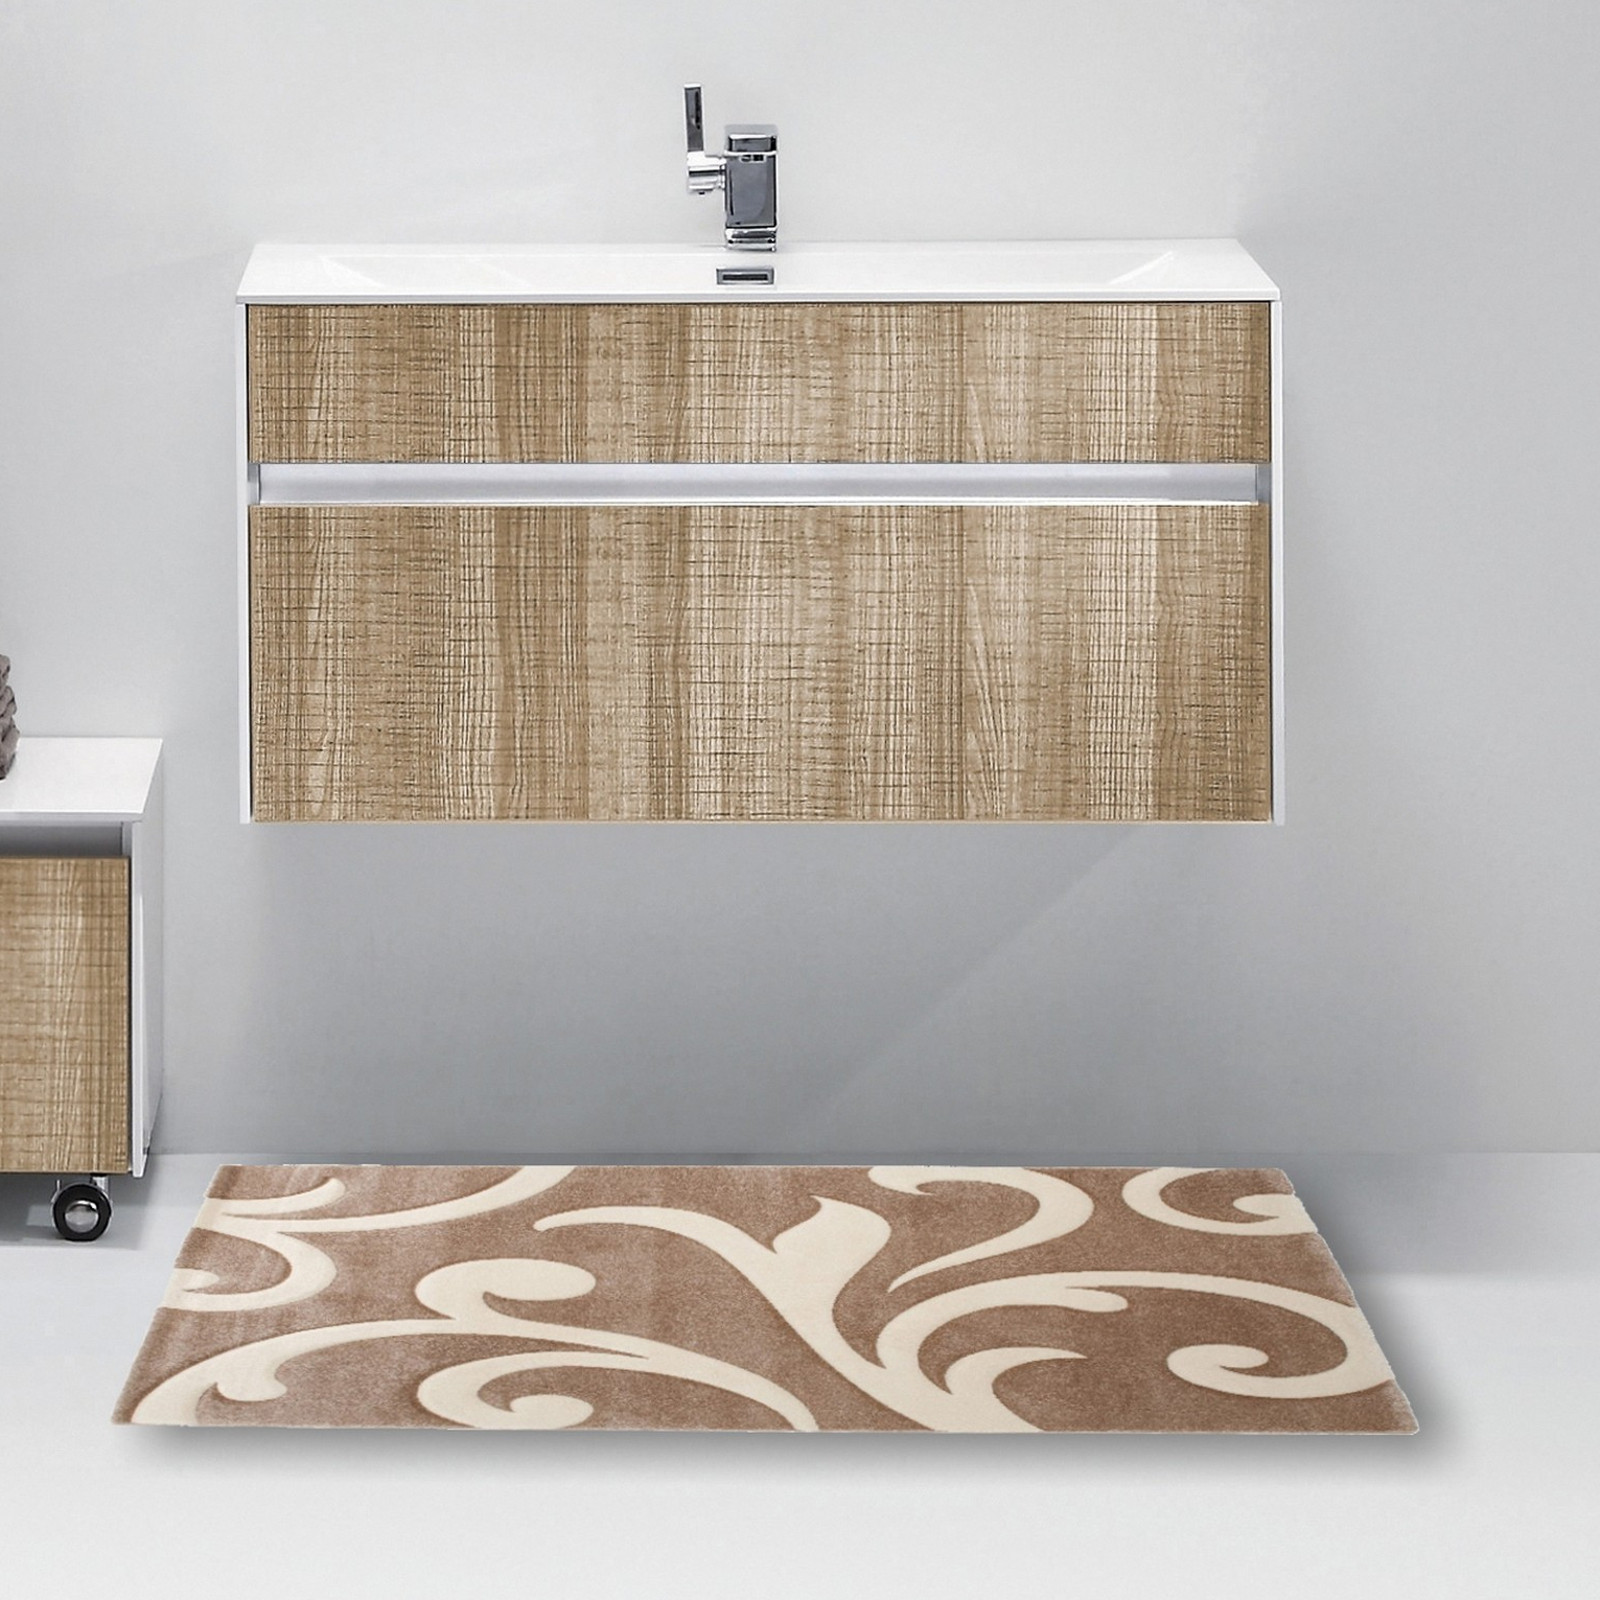 Tappeti moderni per il bagno in cotone